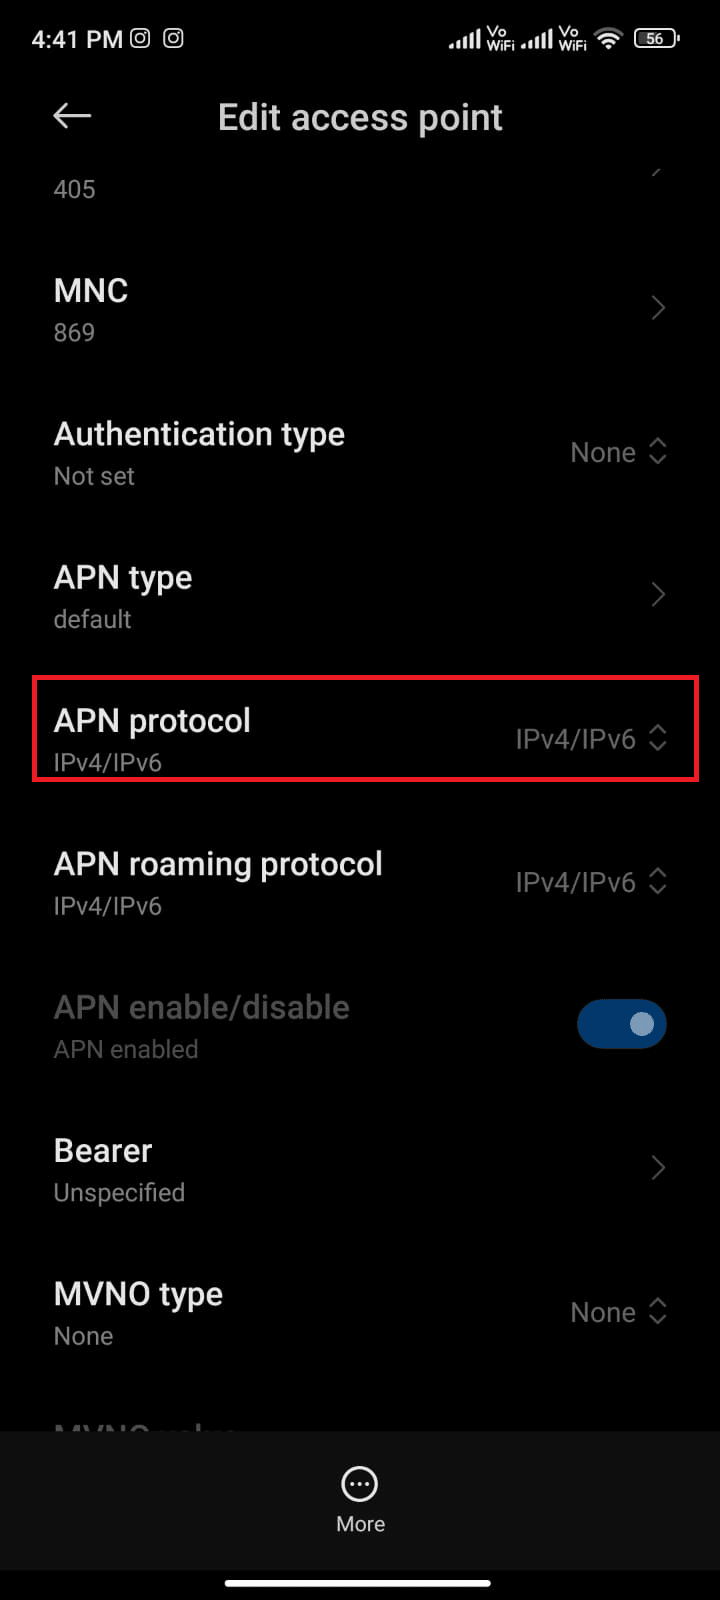 tap on APN roaming protocol